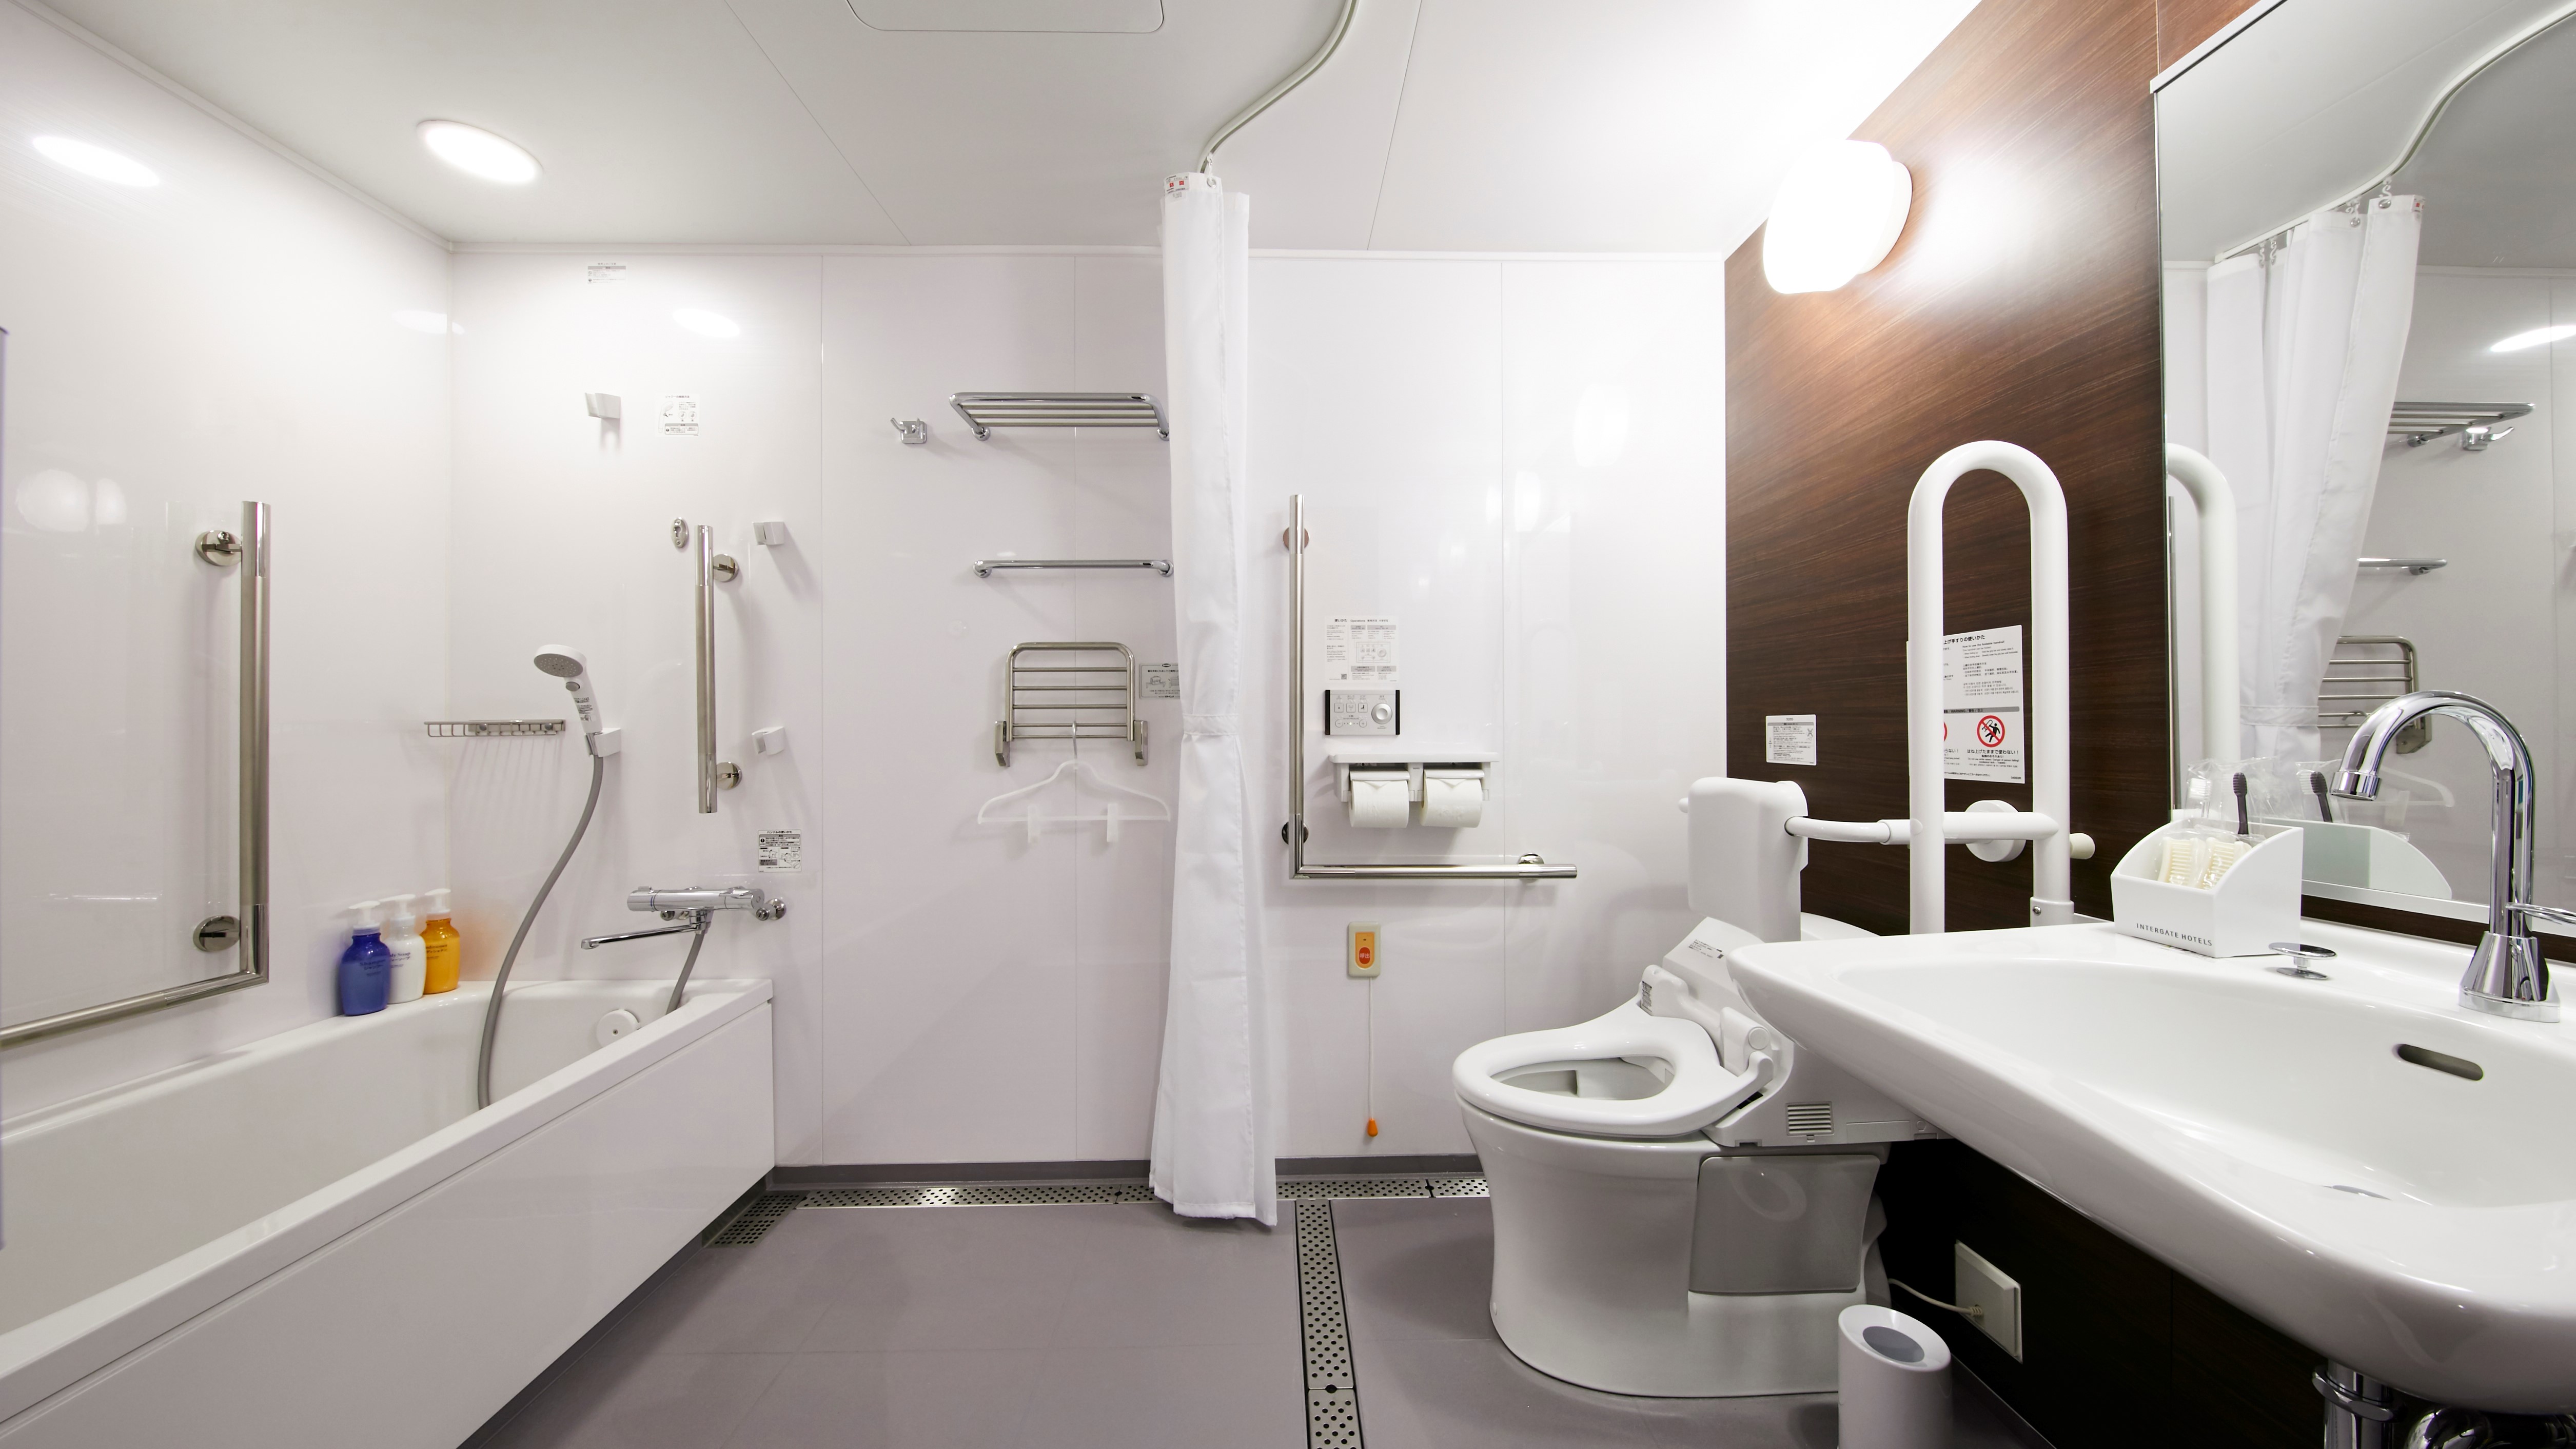 【ユニバーサルツイン】広めのバス・トイレは手すりもあり、車椅子のままご利用いただけるバリアフリー仕様